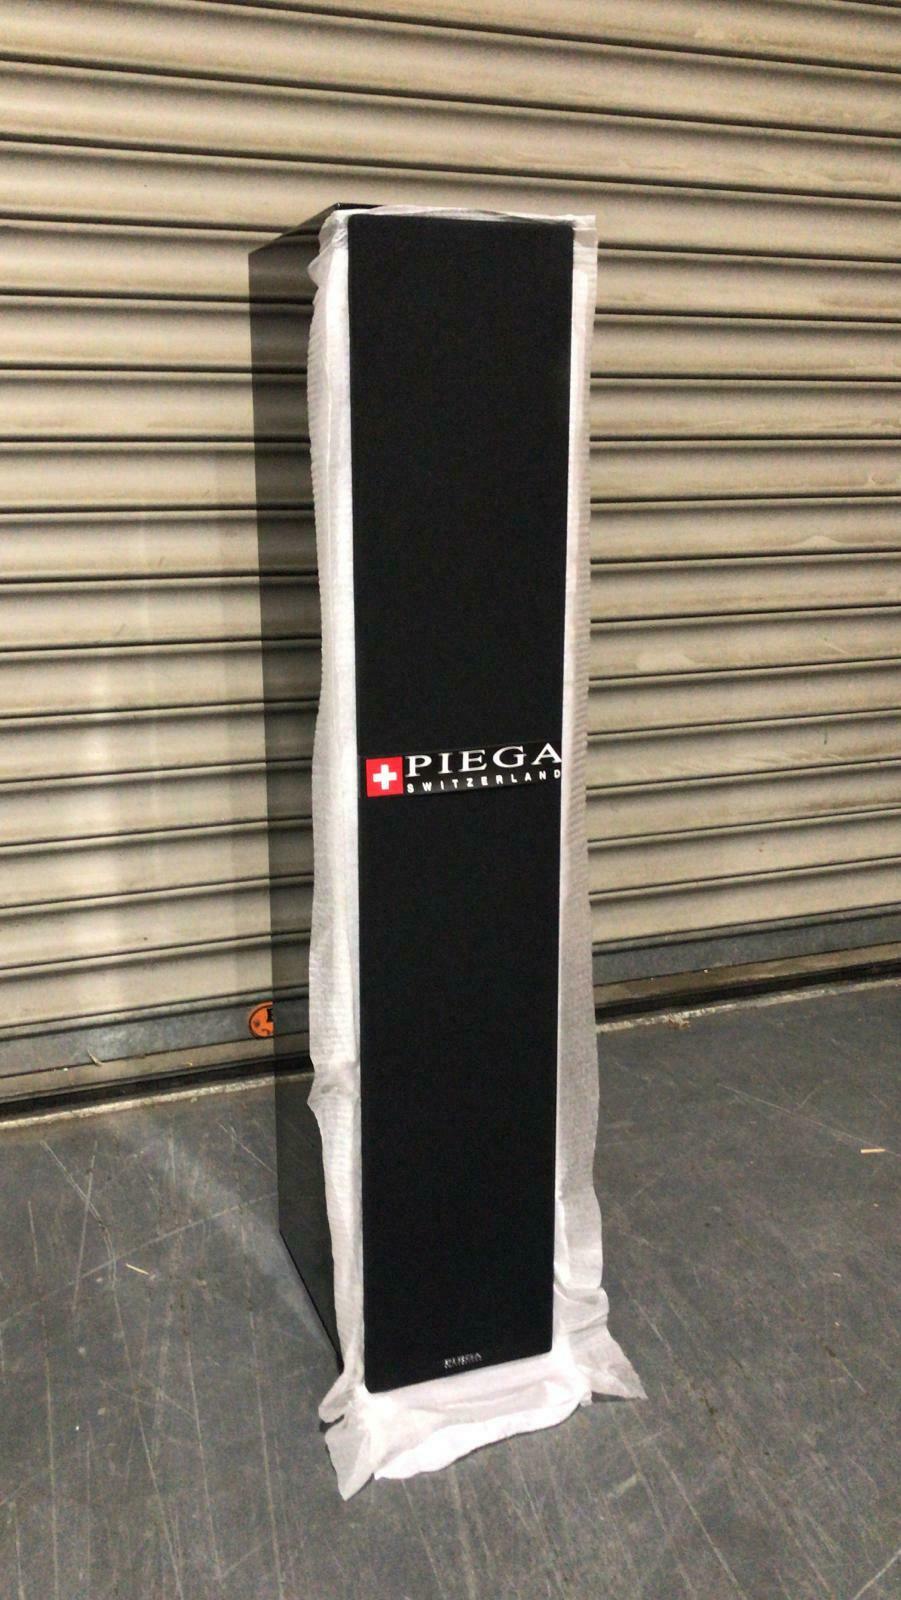 Piega Classic 5.0 Premium Piano Black Floor-standing Speakers (Pair) 6673